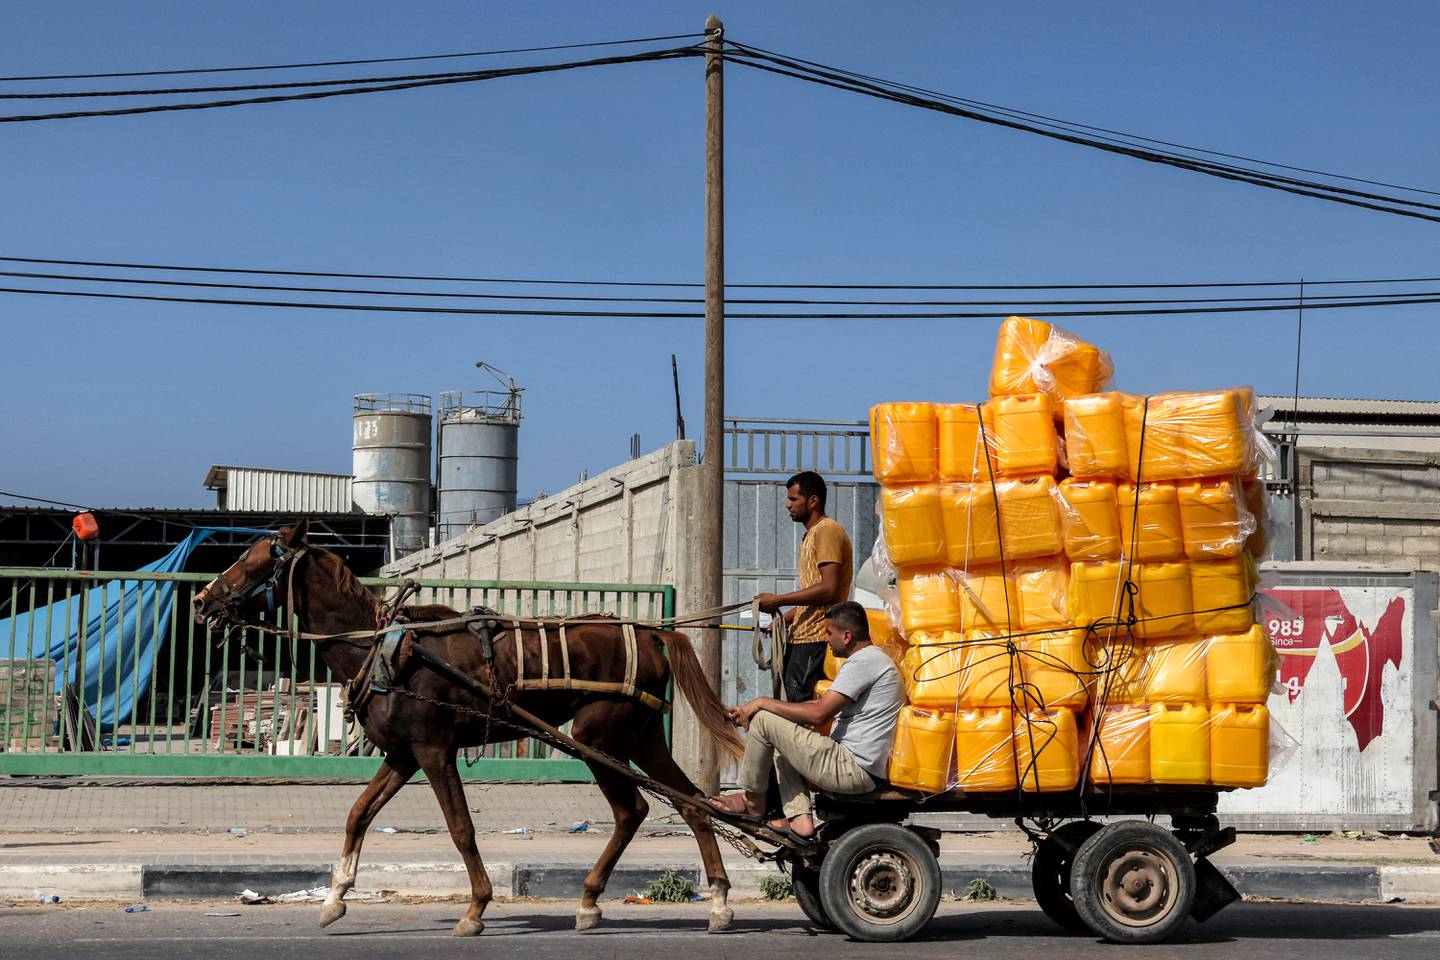 La gente viaja en un carro tirado por caballos que transporta un cargamento de bidones vacíos a lo largo de una carretera en el centro de la Franja de Gaza